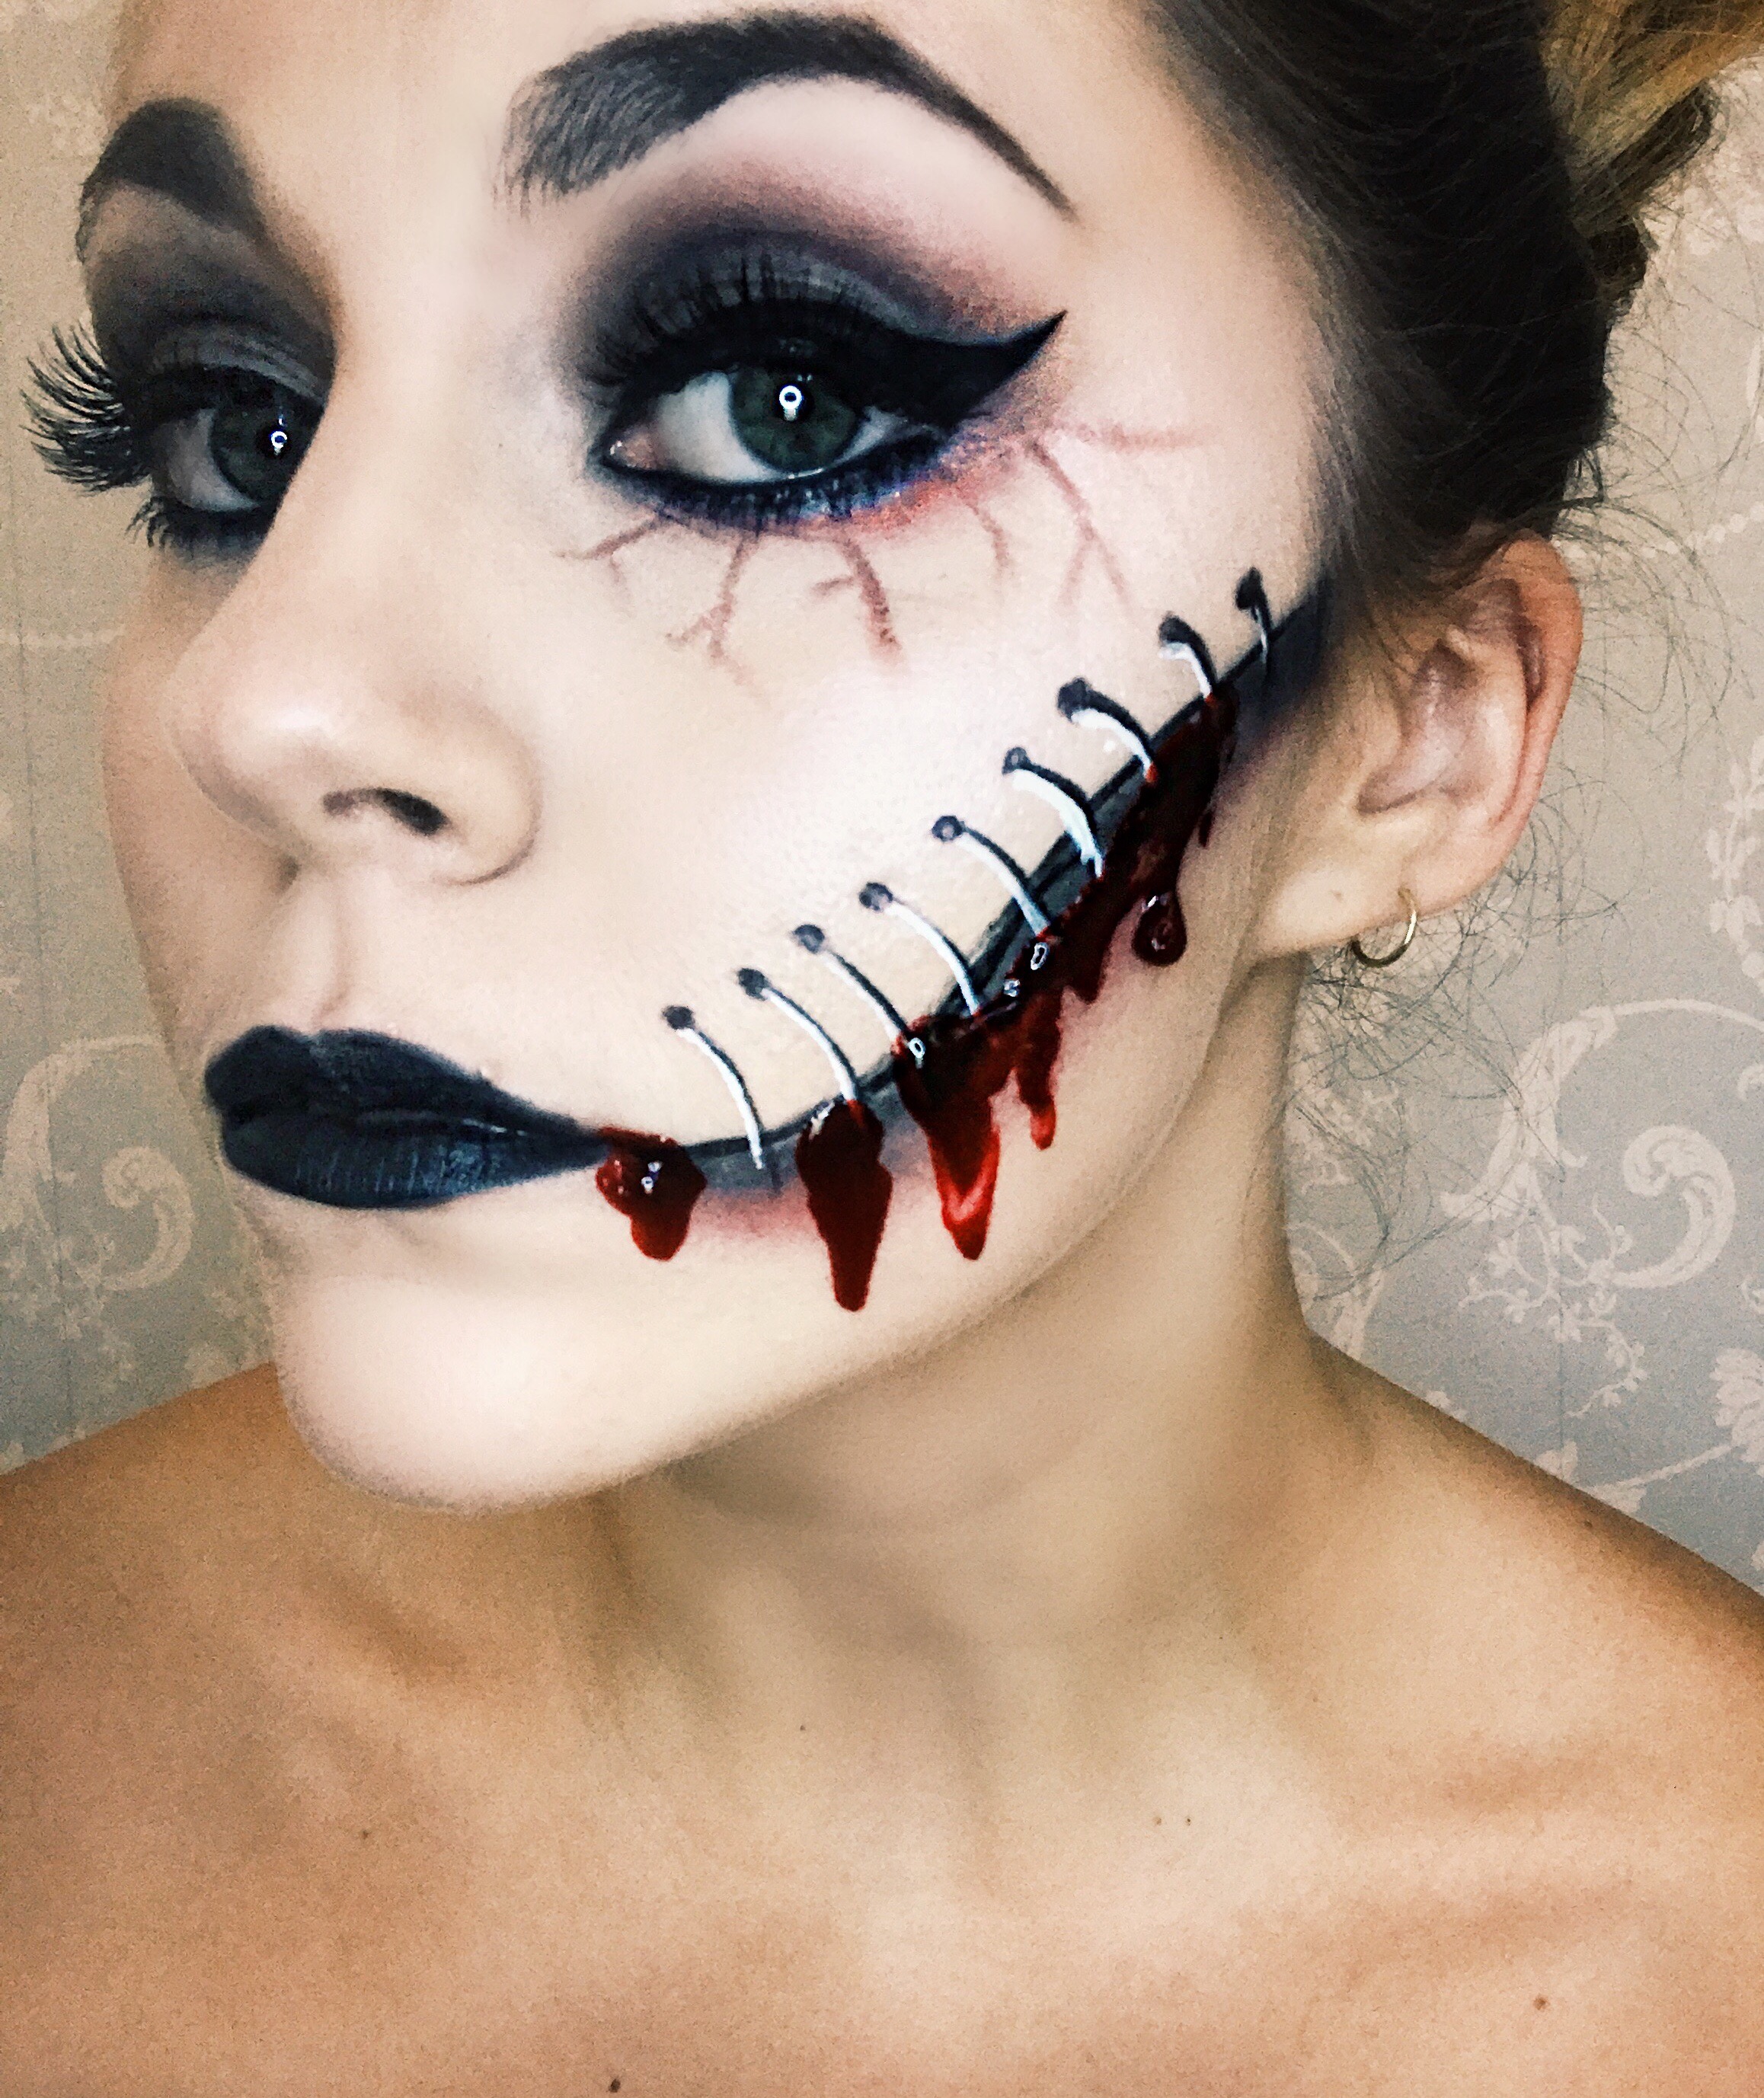 Frankenstein's bride Halloween makeup